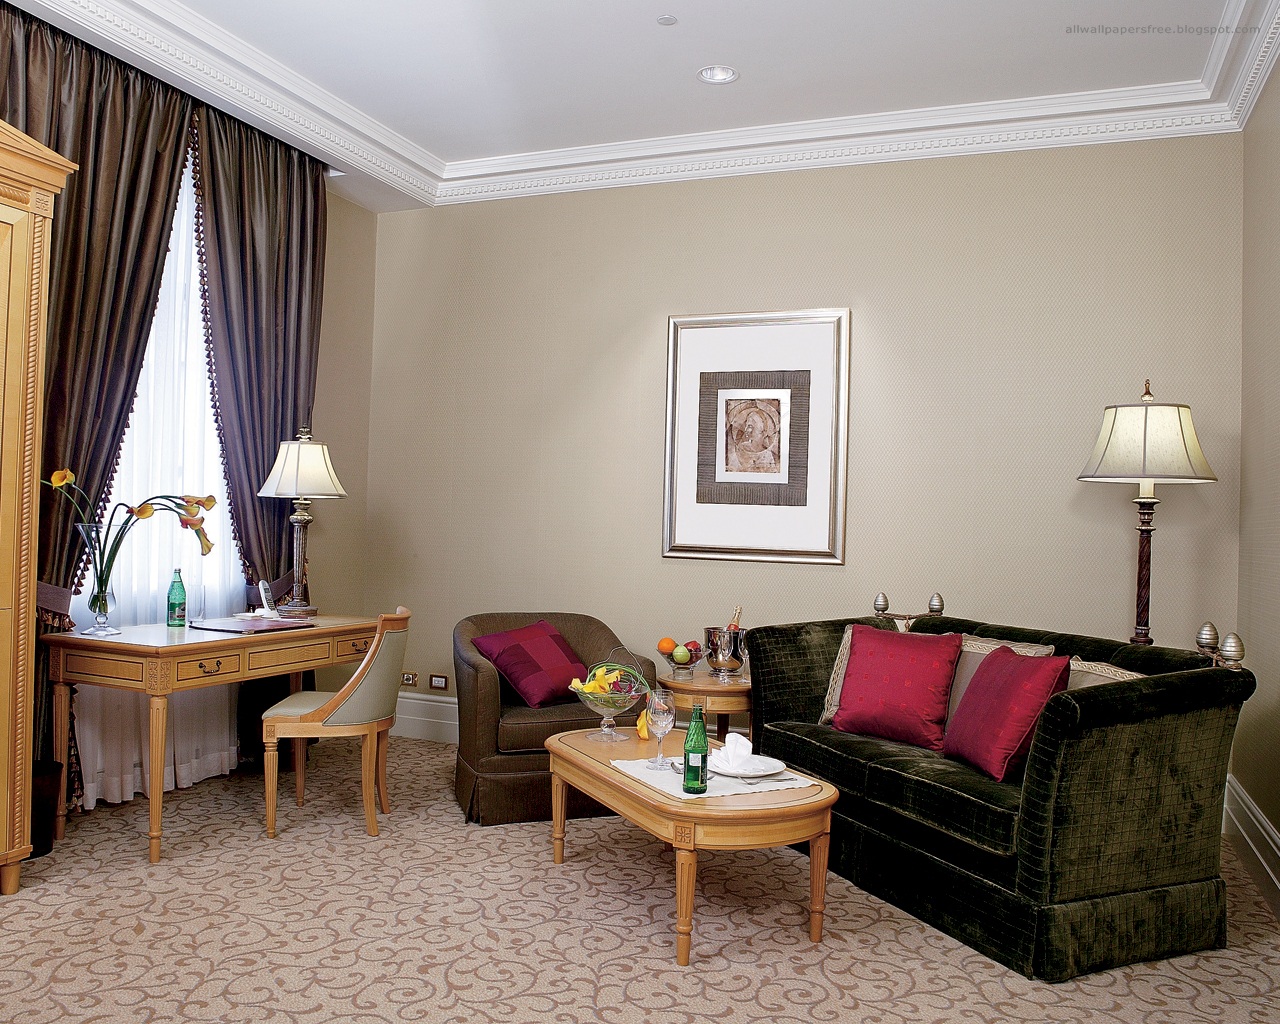 Download HQ Hotels Interior Design wallpaper / Photo Art / 1280x1024